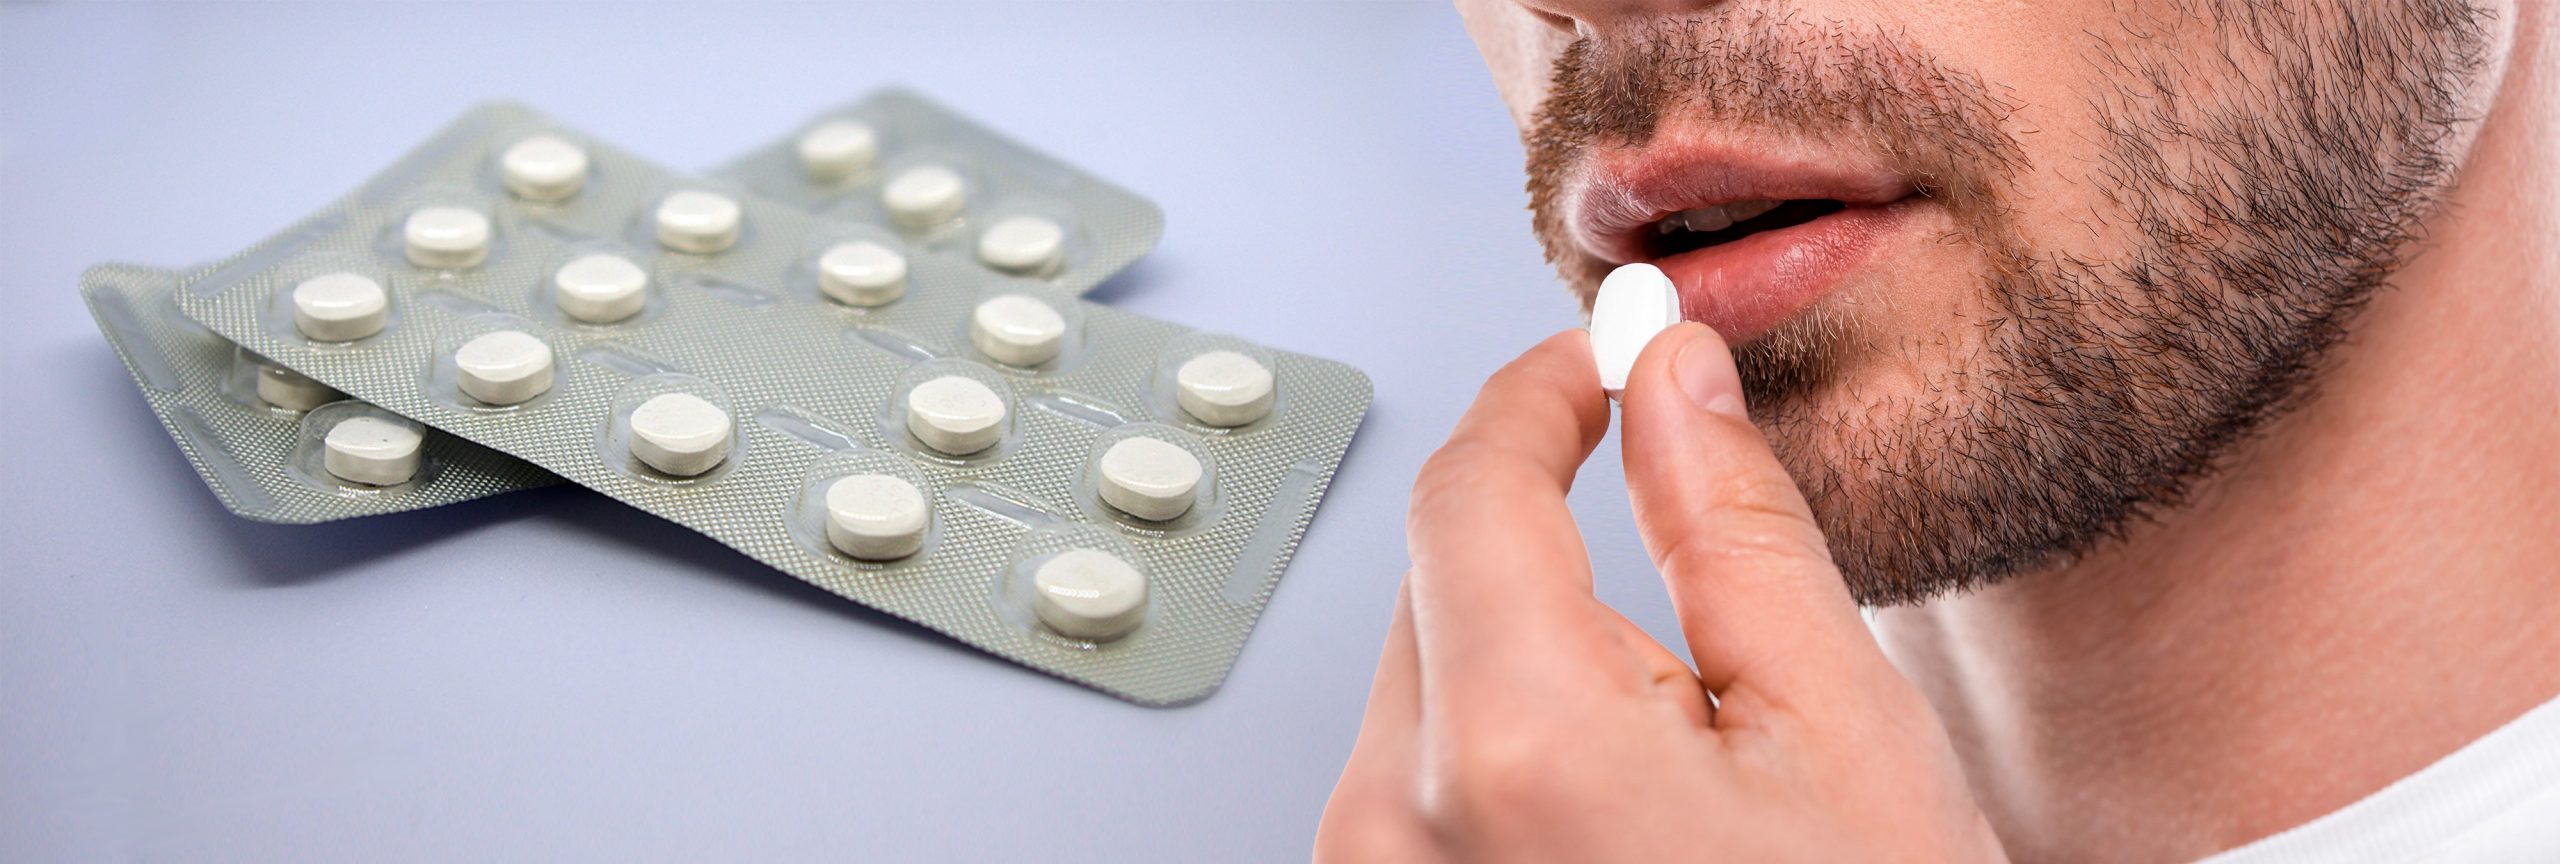 Píldora anticonceptiva para hombres sería segura y eficaz